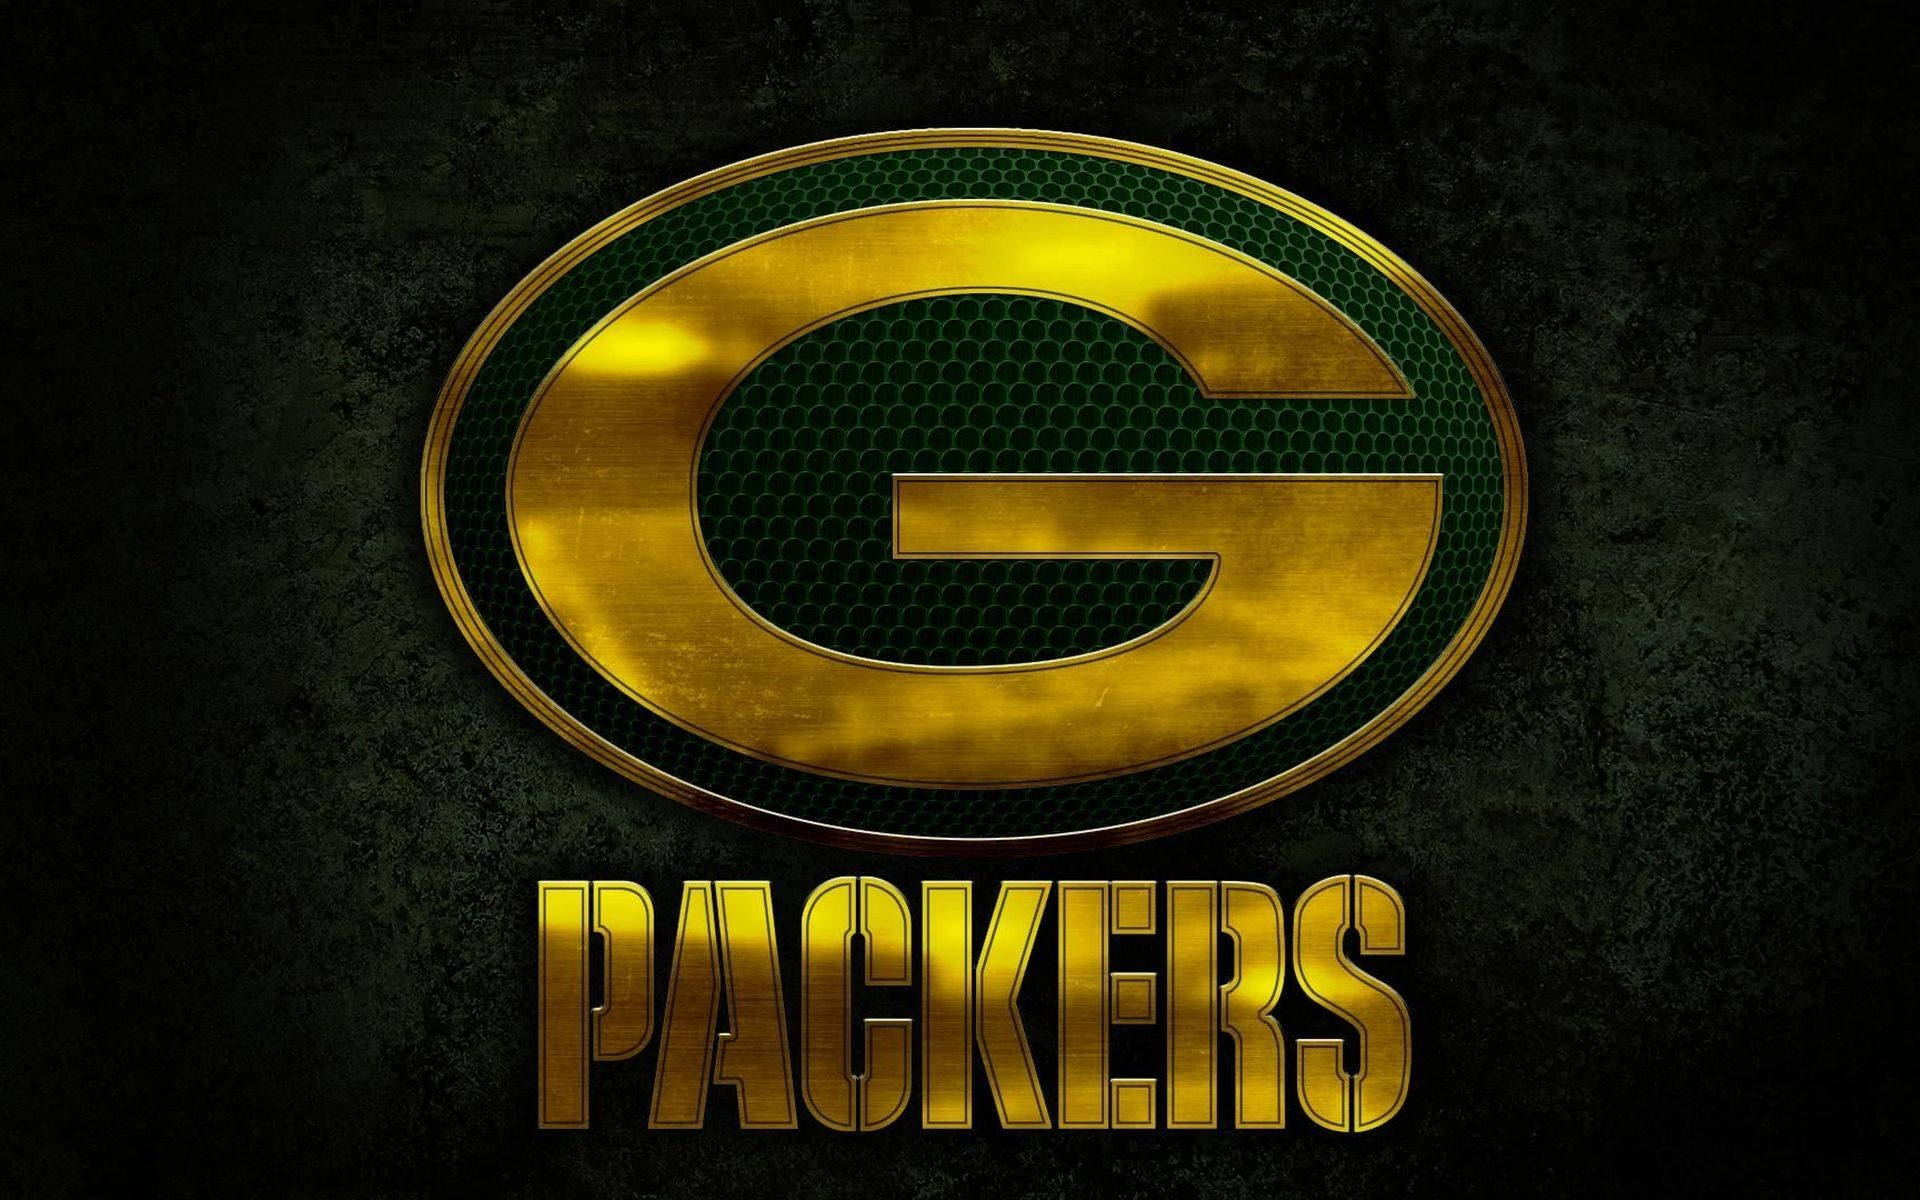 Green Bay Packers Golden Logo Wallpaper